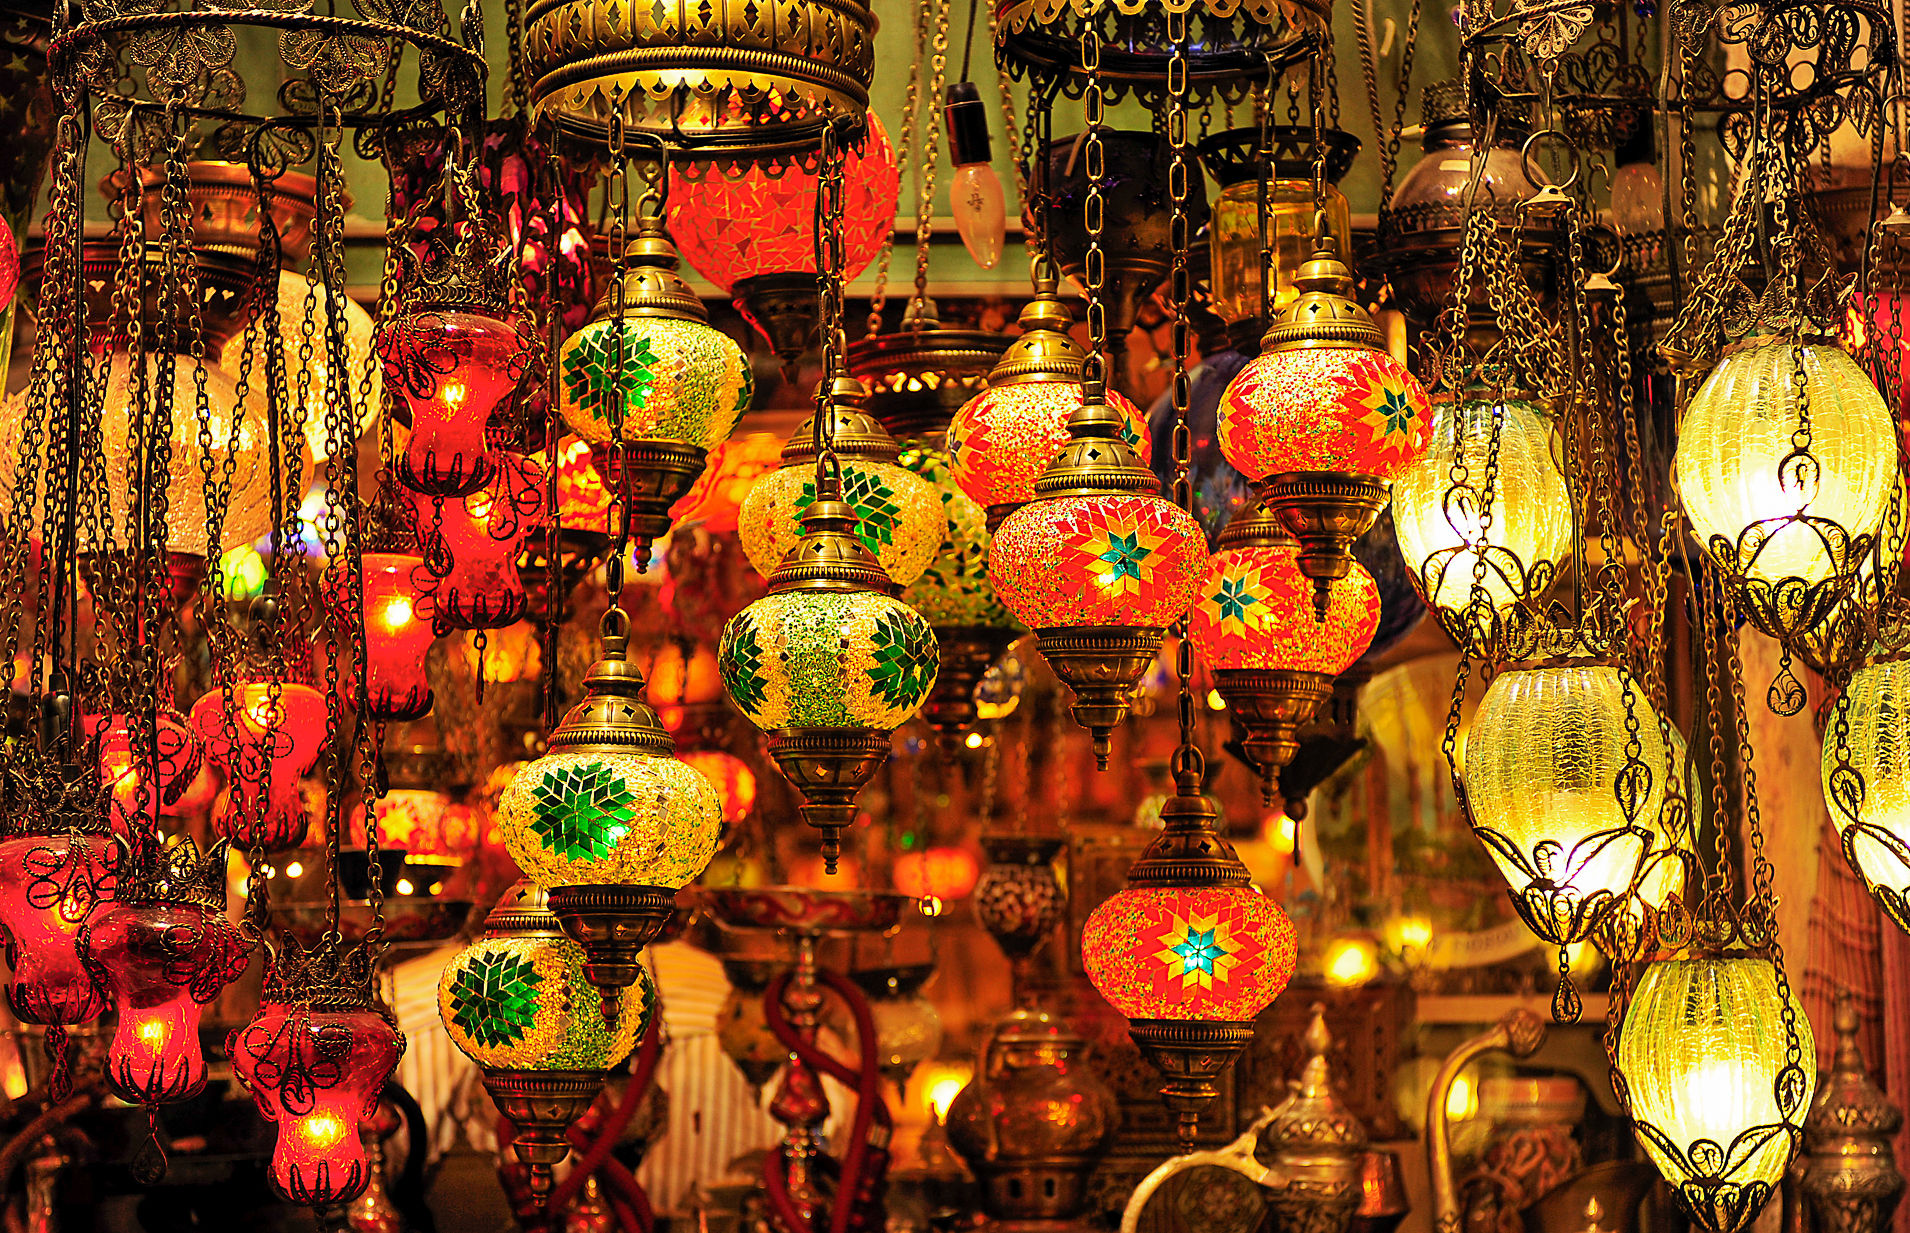 Istanbul-chandeliers in the Grand Bazaar...